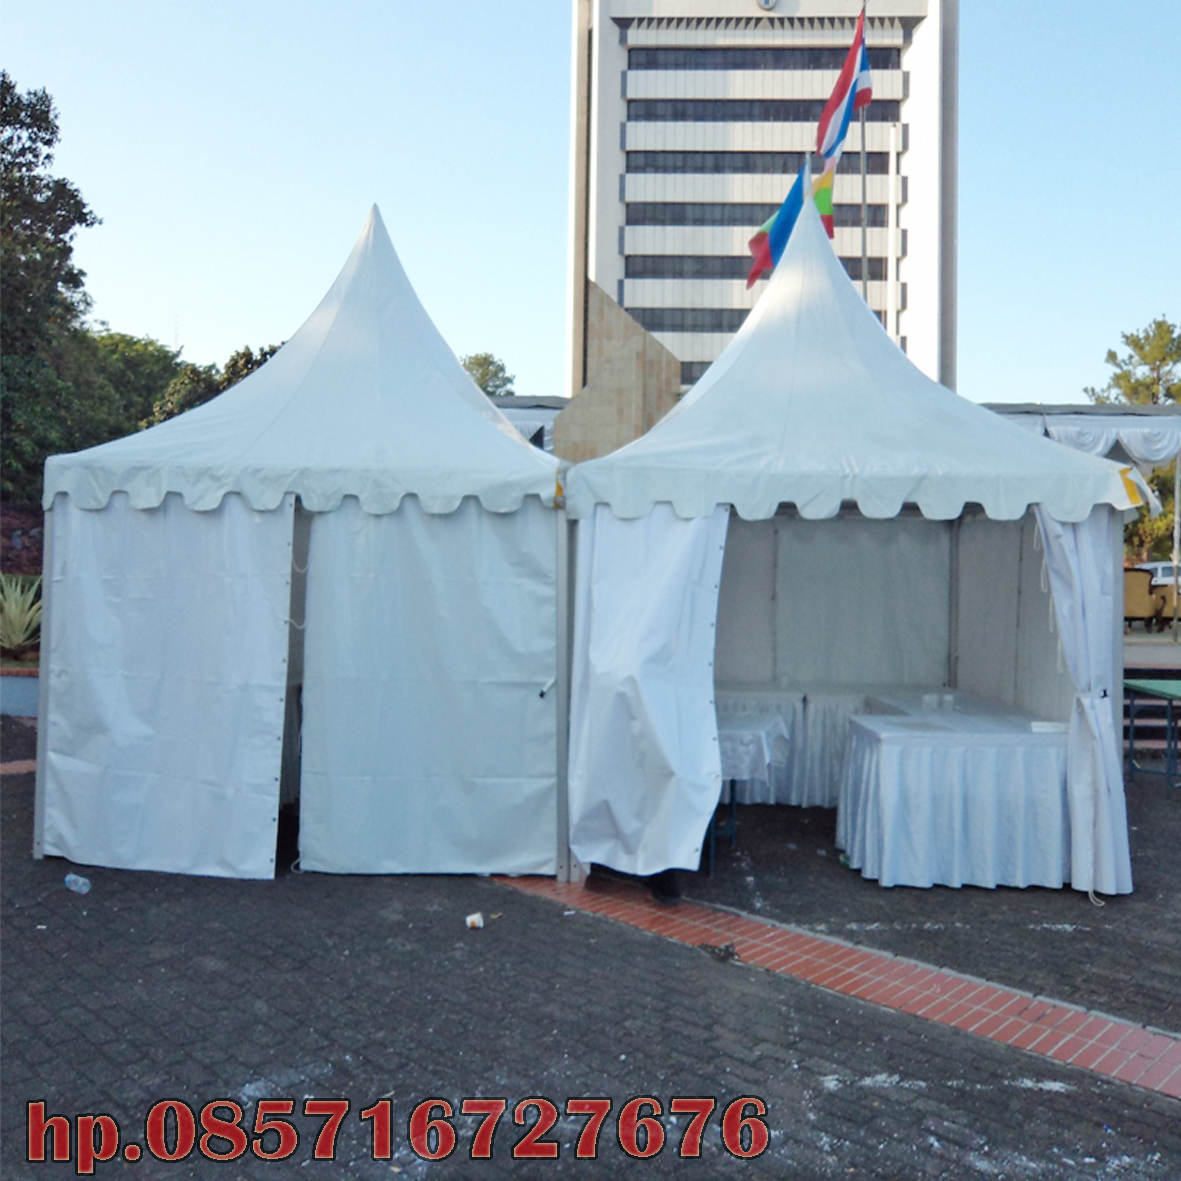 Kranji tenda  Jakarta tenda terpal berkualitas